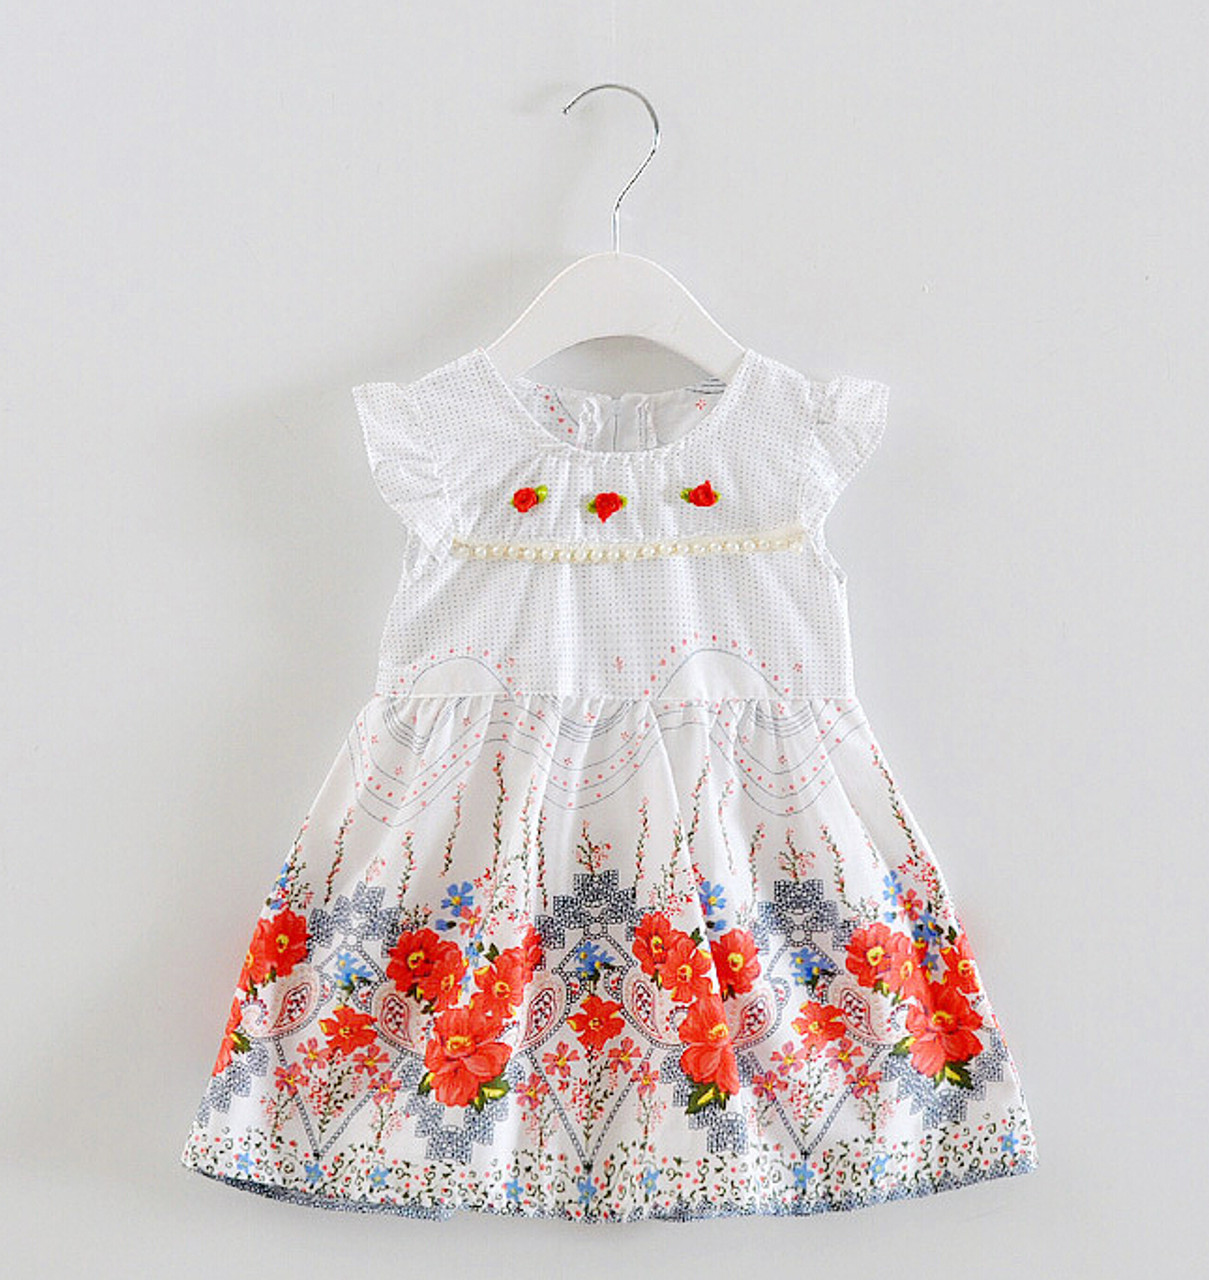 Baby Girl Dress Design अपनी बेटी के लिए लेना चाहते हैं कोइ ड्रेस तो चुने ये  स्टाइलिश डिजाइन - Baby Girl Dress Design to Gives Your Daughter a Stylish  Look